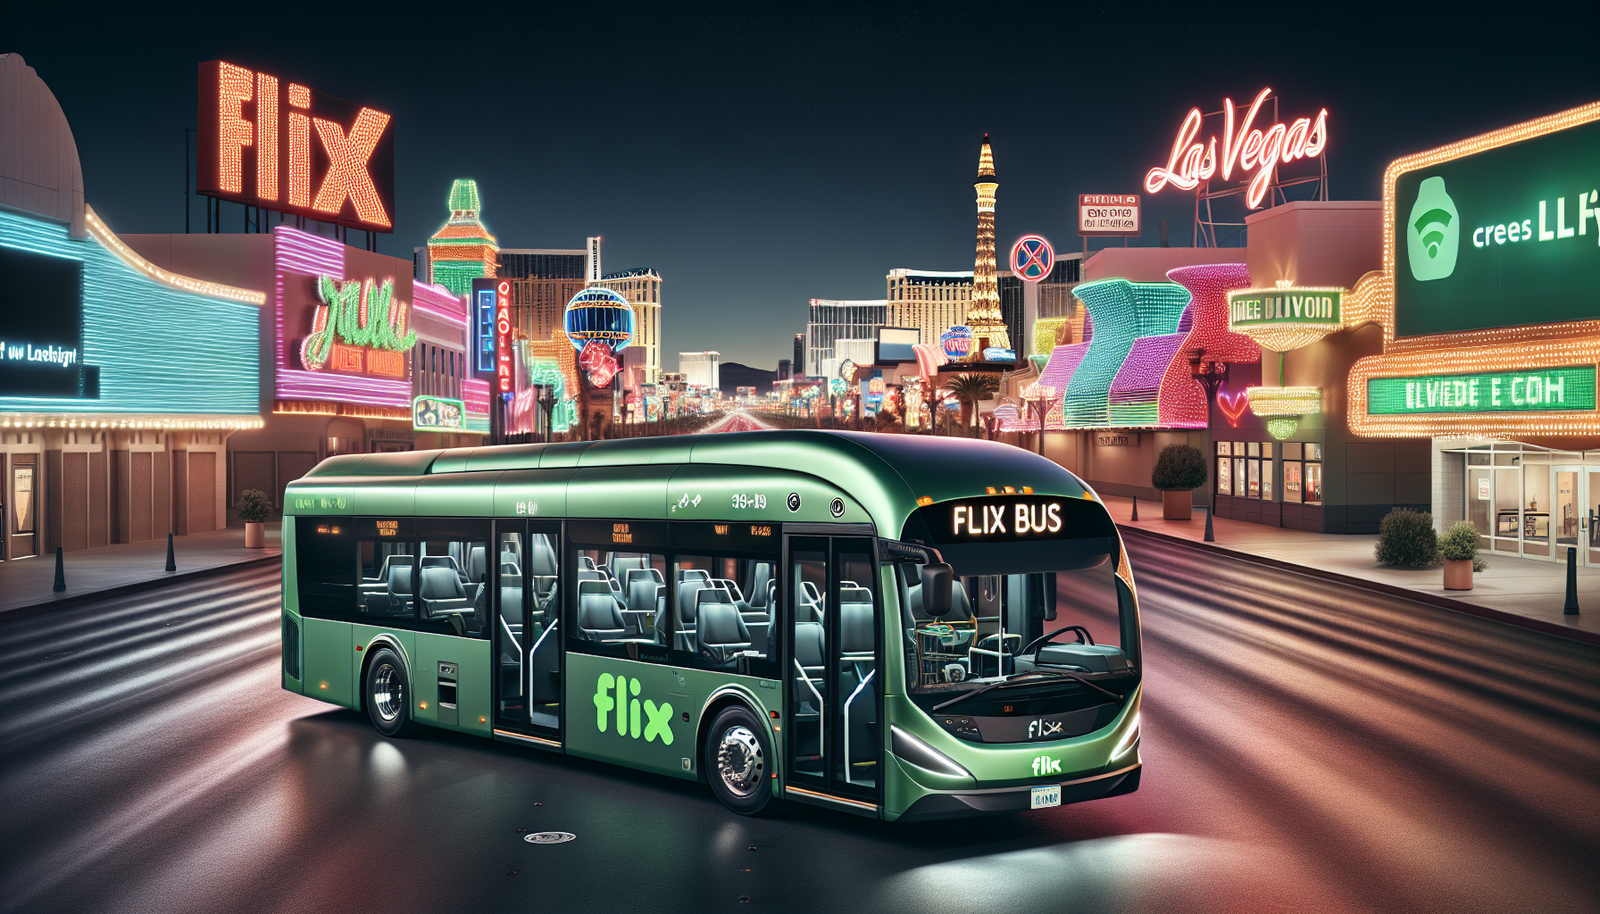 Flix Bus Las Vegas